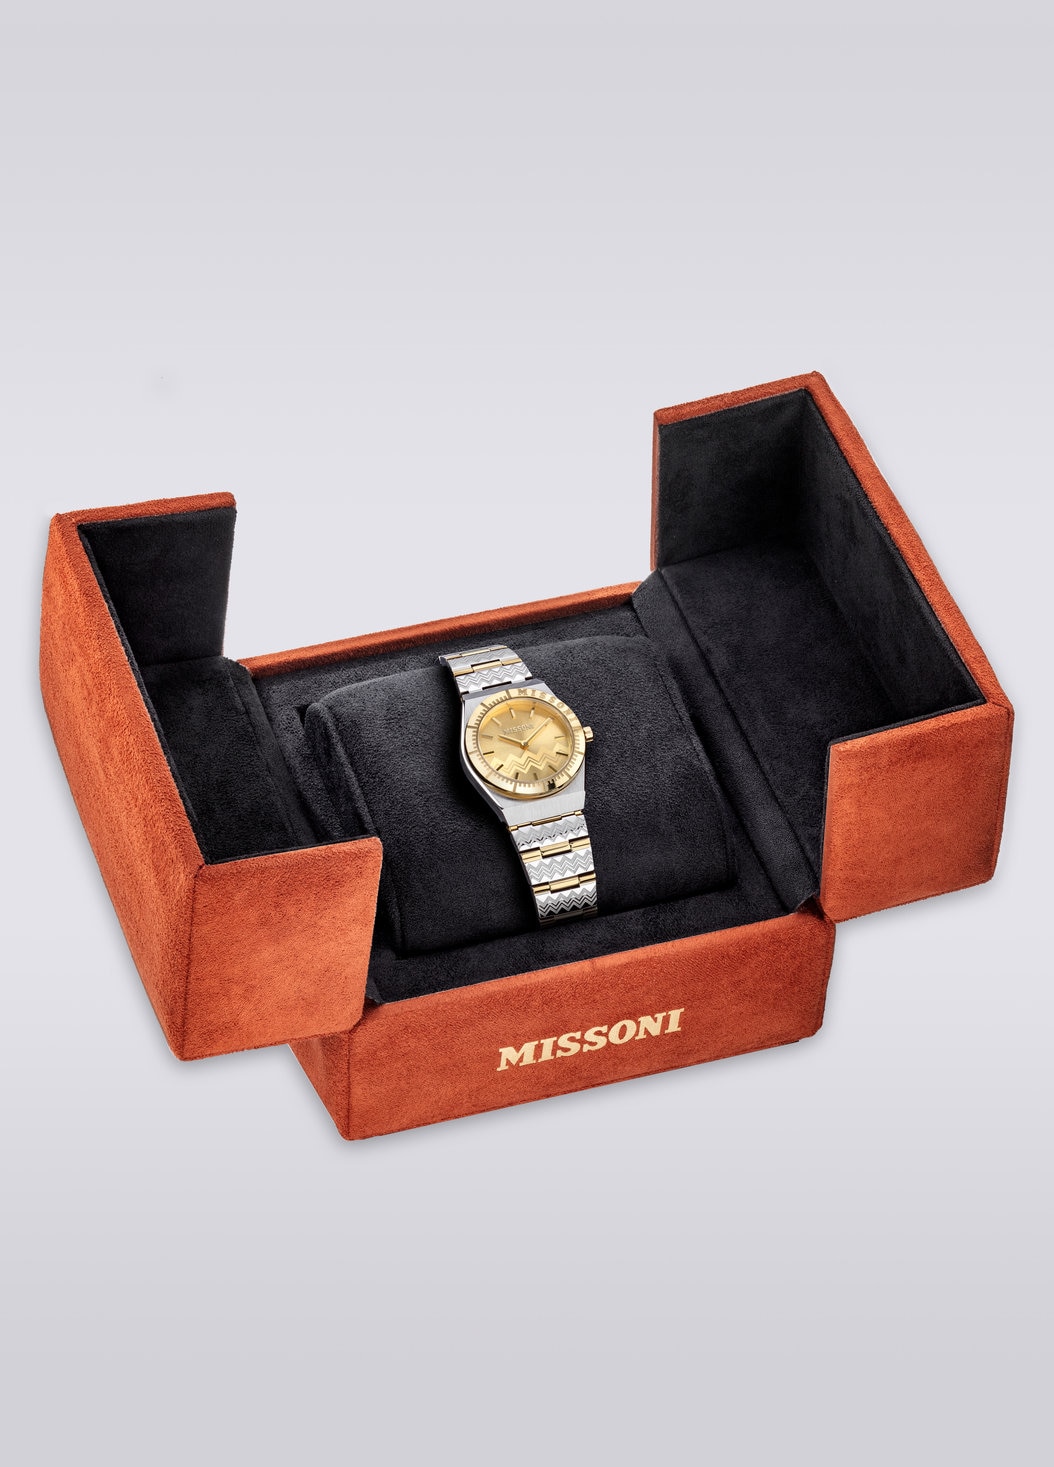 Missoni Milano, Uhr mit 29 MM Gehäusegröße, Mehrfarbig  - 8053147046167 - 4